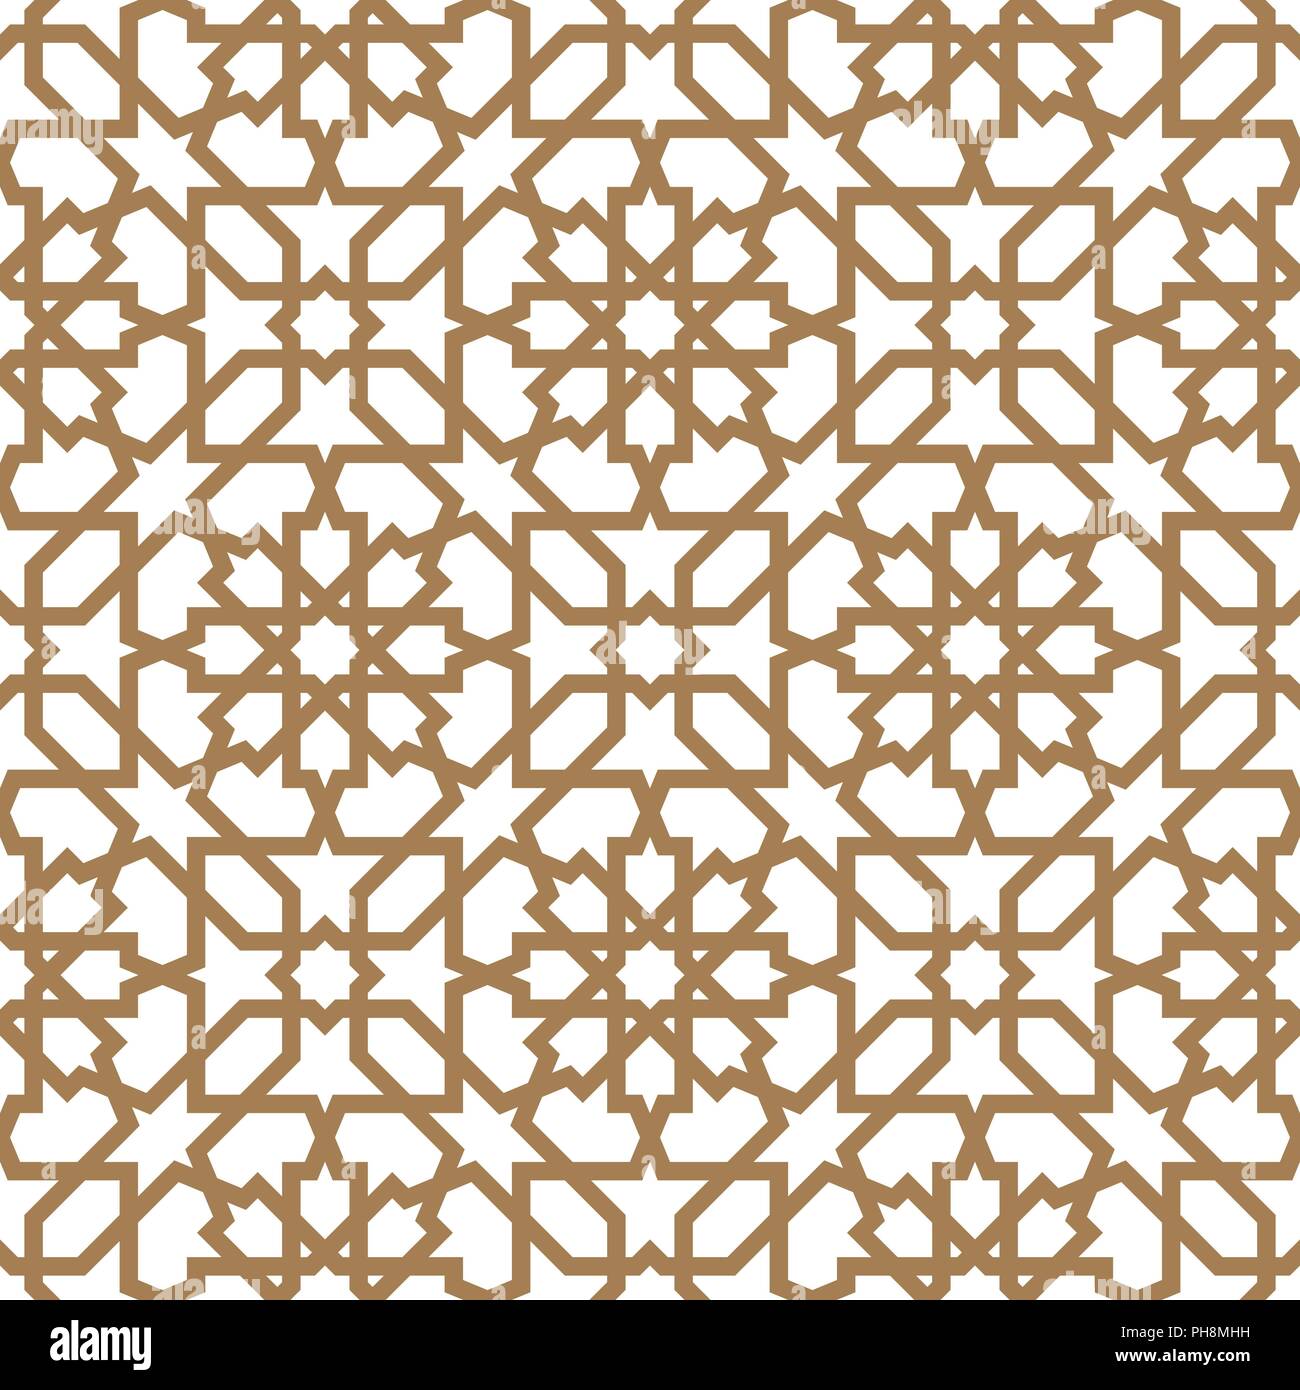 L'arabe sans ornement géométrique basée sur l'art arabe traditionnelle mosaïque musulmane. Bain turc, arabe mosaïque sur fond blanc fait par compensation Illustration de Vecteur